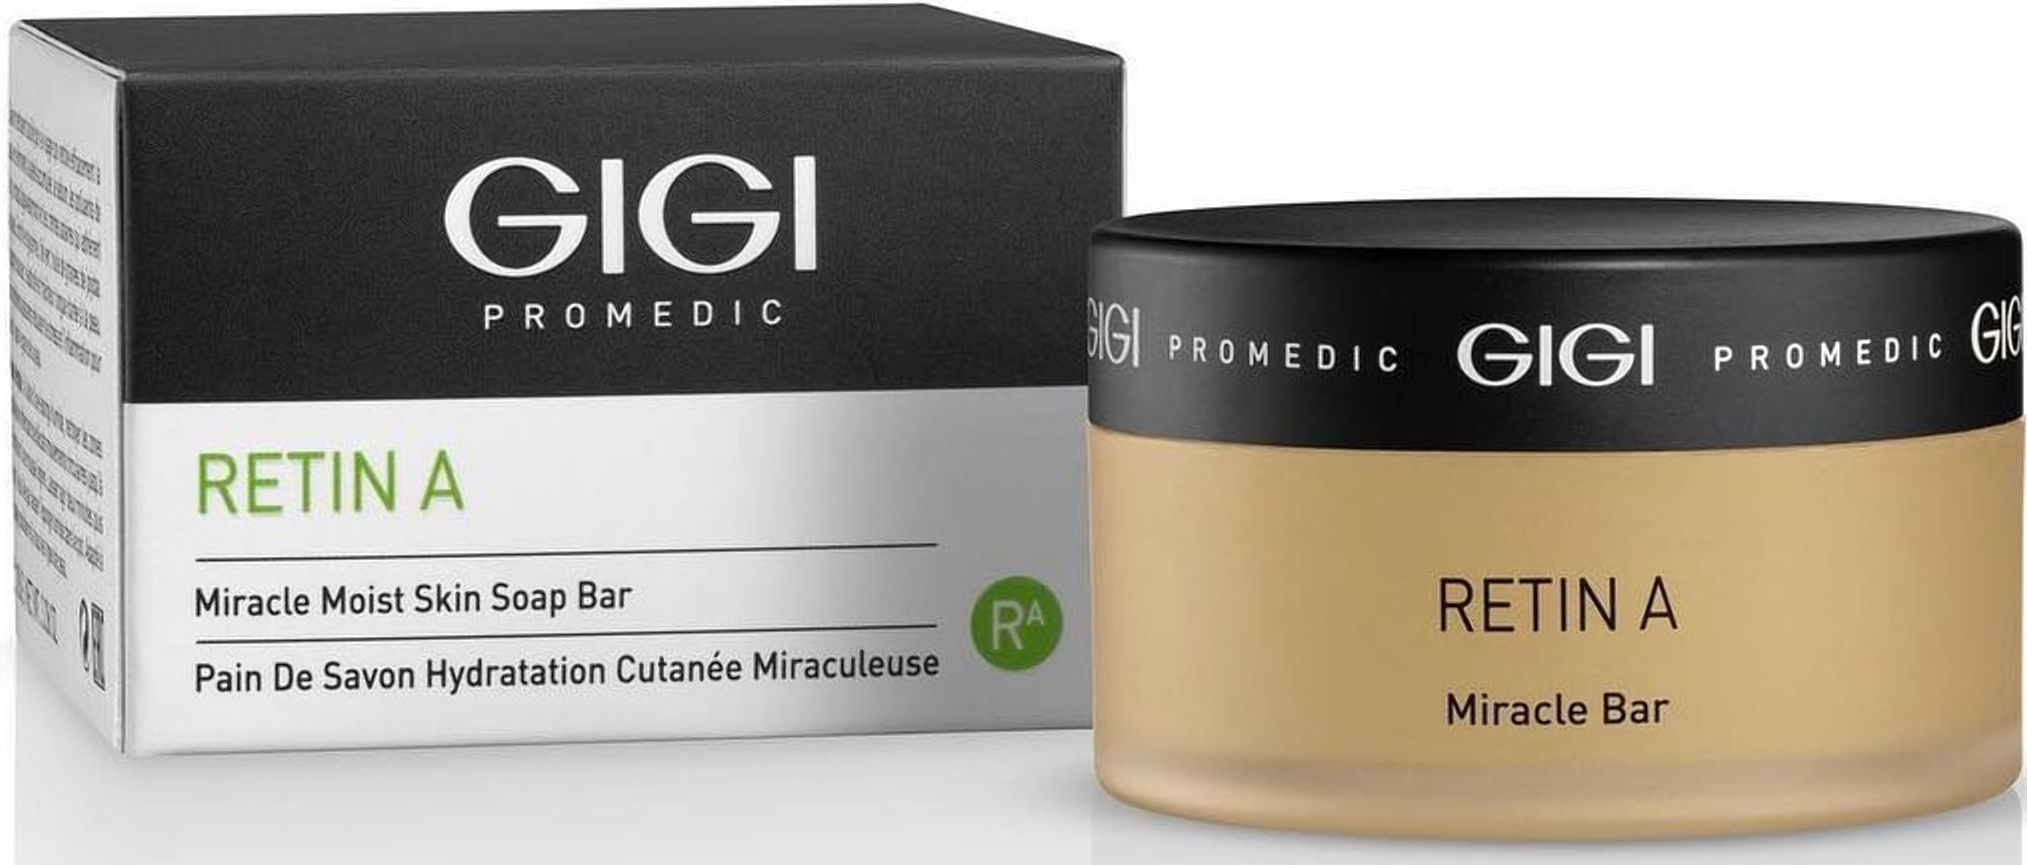 ᐈ Мыло со спонжем увлажняющее Gigi Promedic Miracle Soap Bar ...